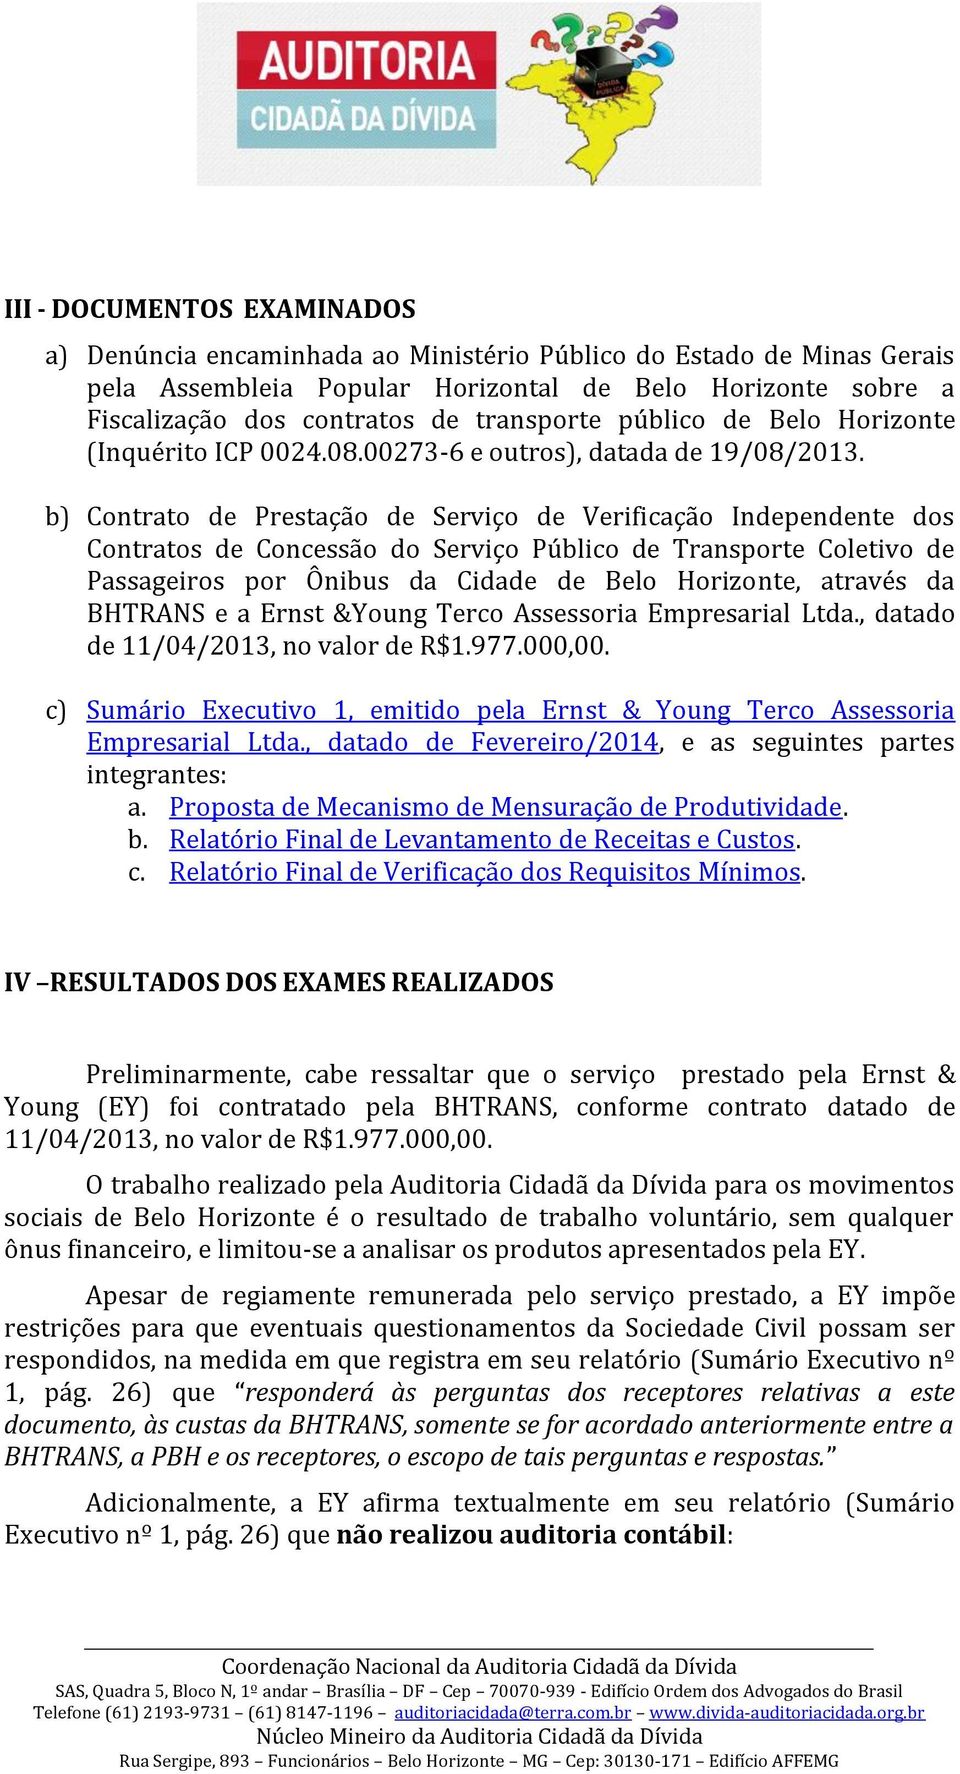 b) Contrato de Prestação de Serviço de Verificação Independente dos Contratos de Concessão do Serviço Público de Transporte Coletivo de Passageiros por Ônibus da Cidade de Belo Horizonte, através da